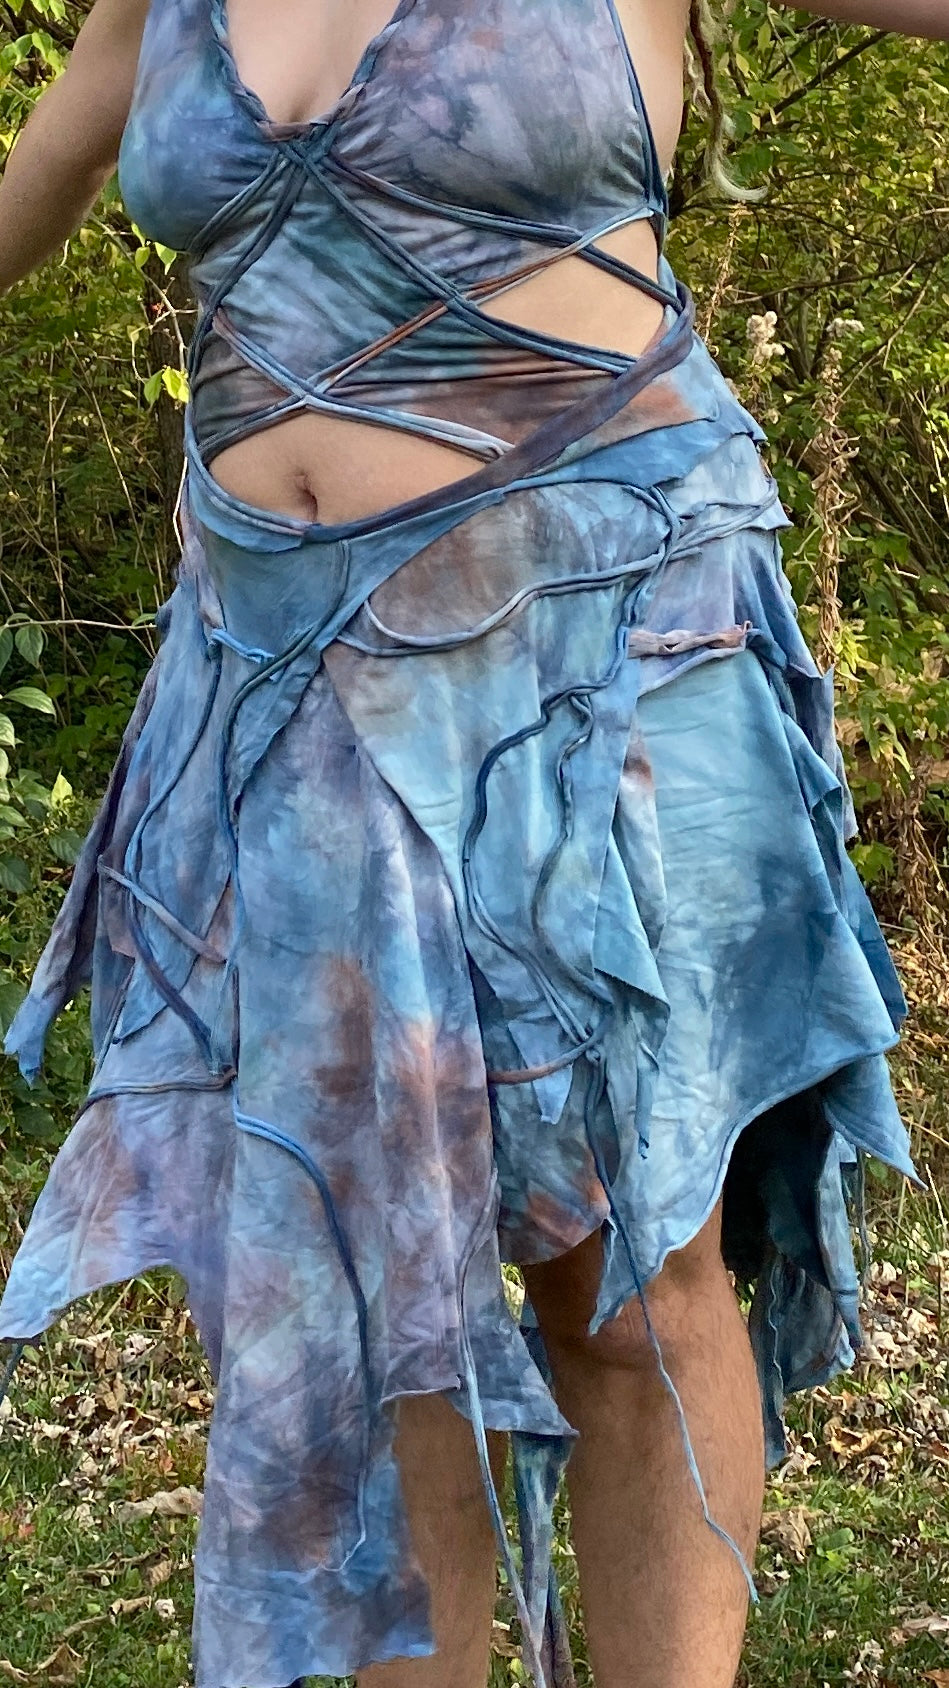 Mermaid on Land: scrap work dress